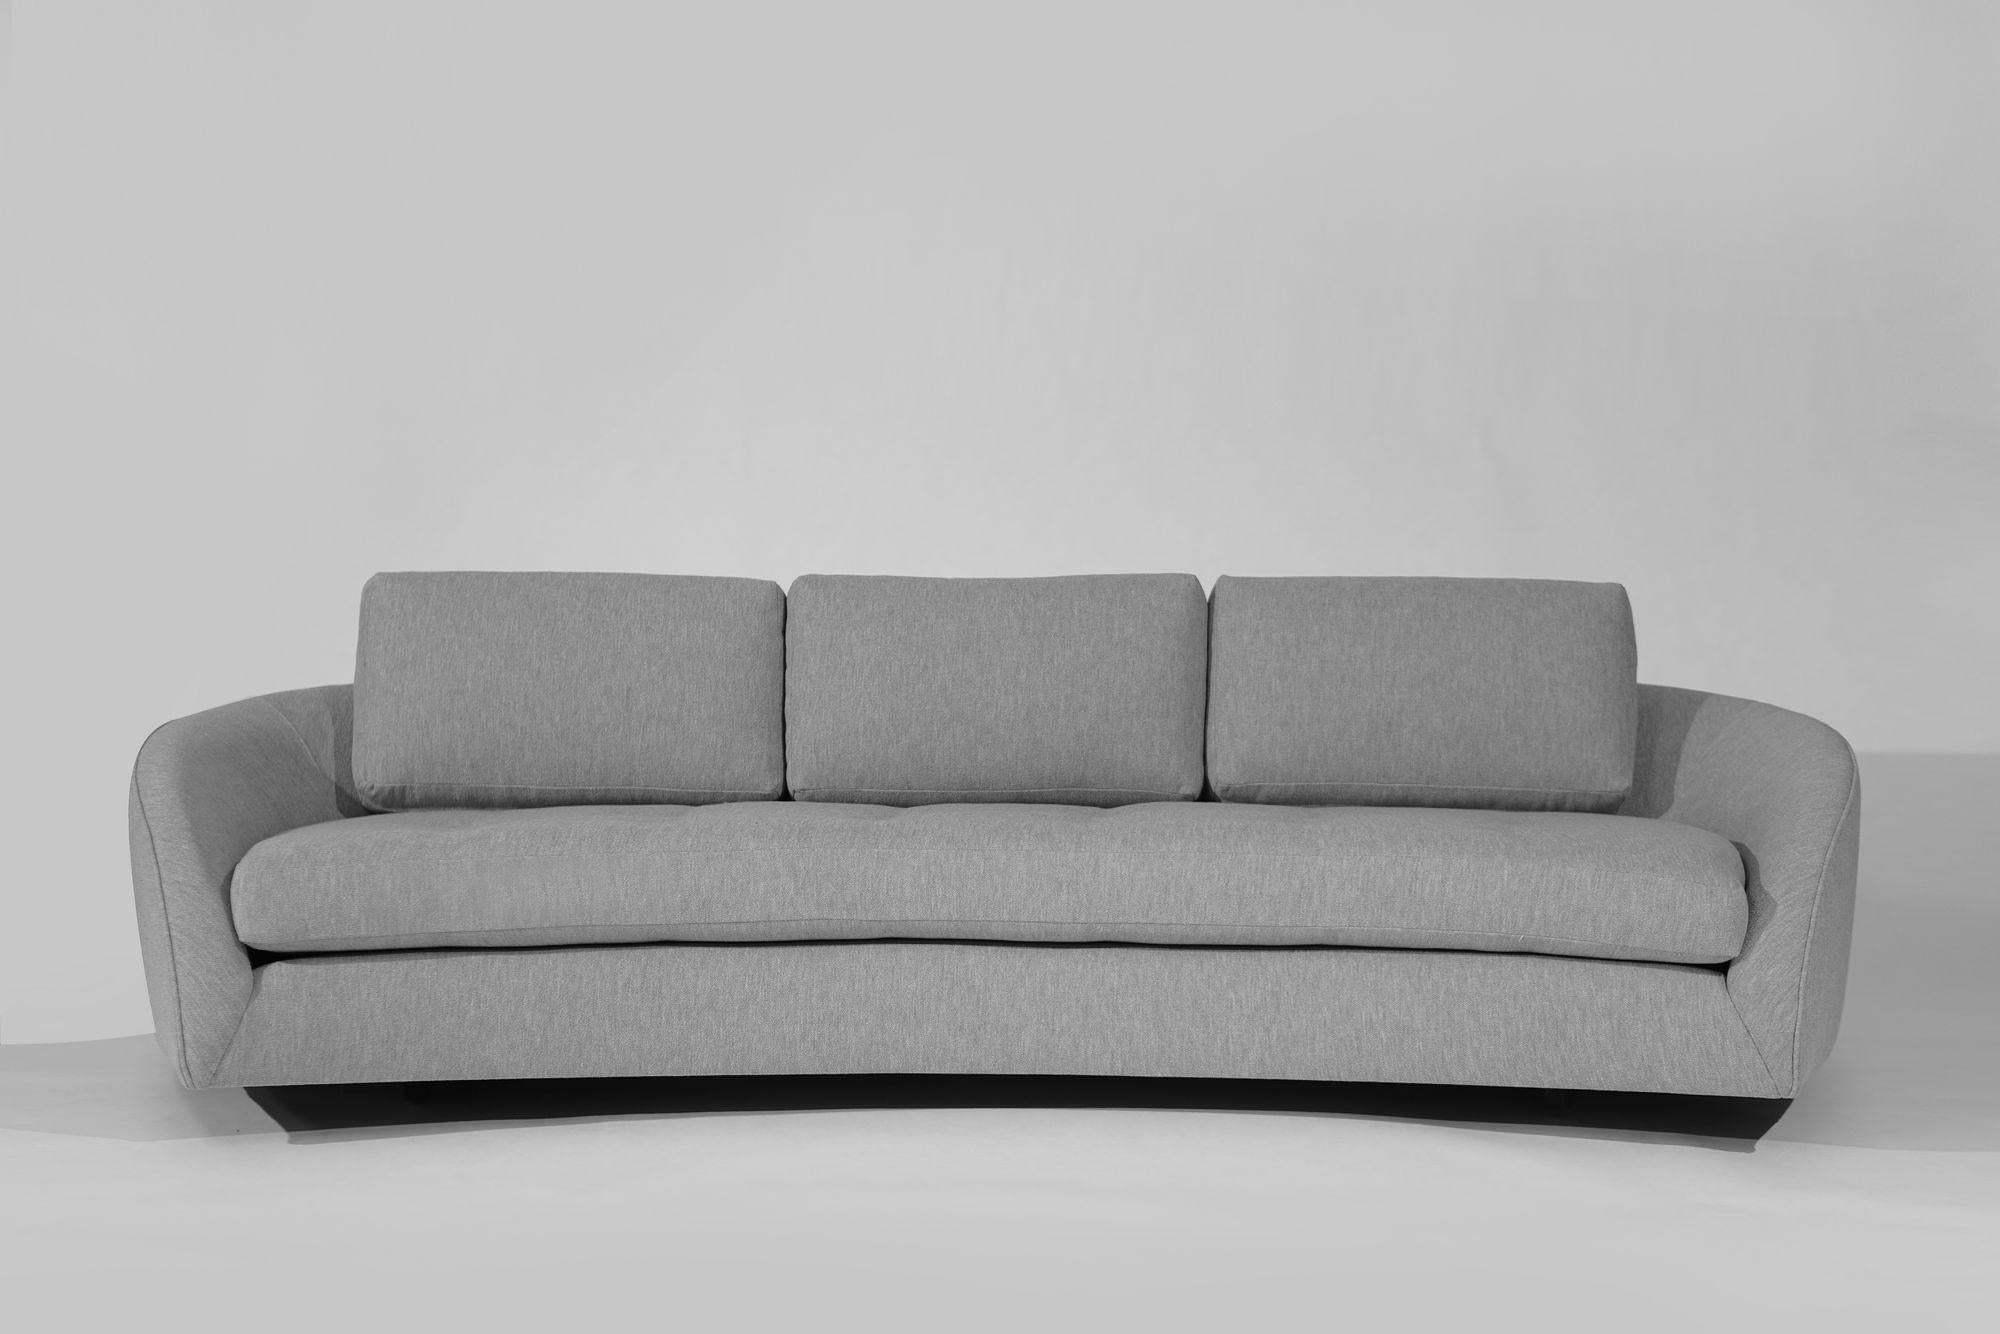 Offrez-vous un confort luxueux avec le canapé Cloud à profil bas, une pièce intemporelle conçue par Adrian Pearsall pour Craft Associates au milieu du XXe siècle. Méticuleusement restauré pour retrouver sa gloire d'origine, ce canapé présente une